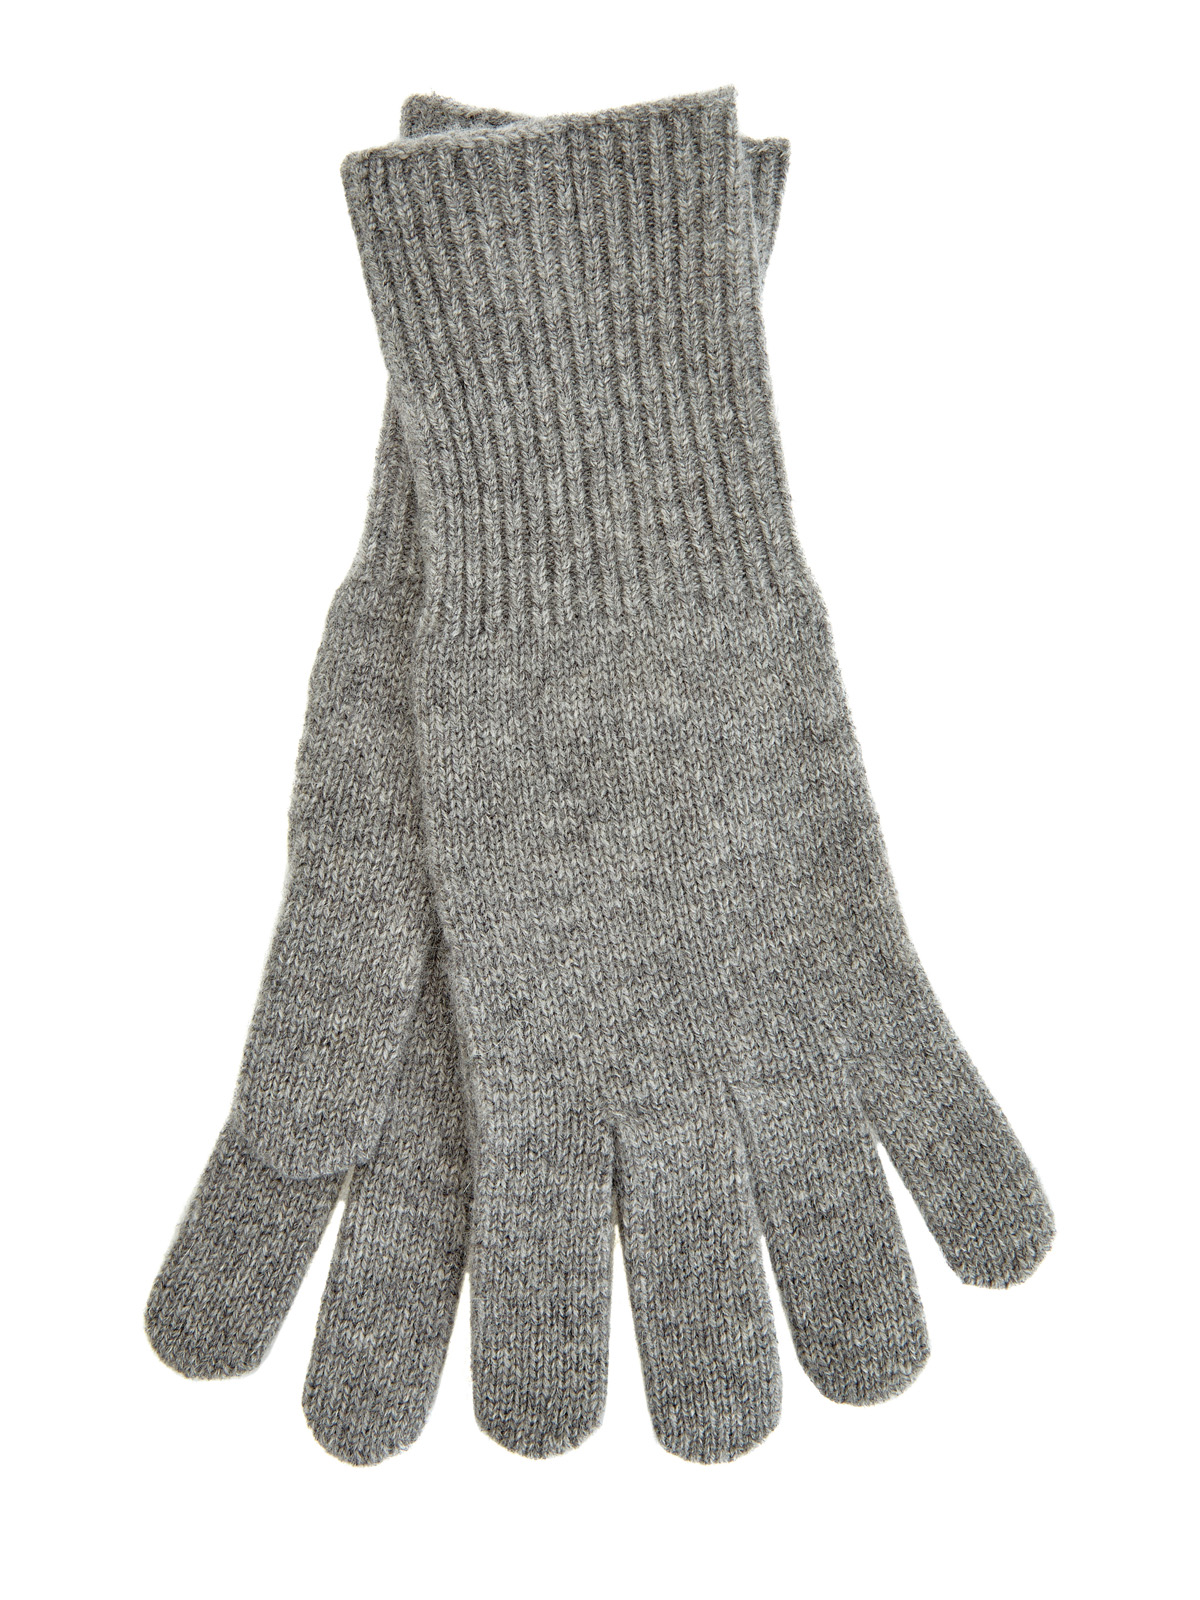 Перчатки из кашемира с манжетами в английскую резинку RE VERA, цвет серый, размер S;M;L